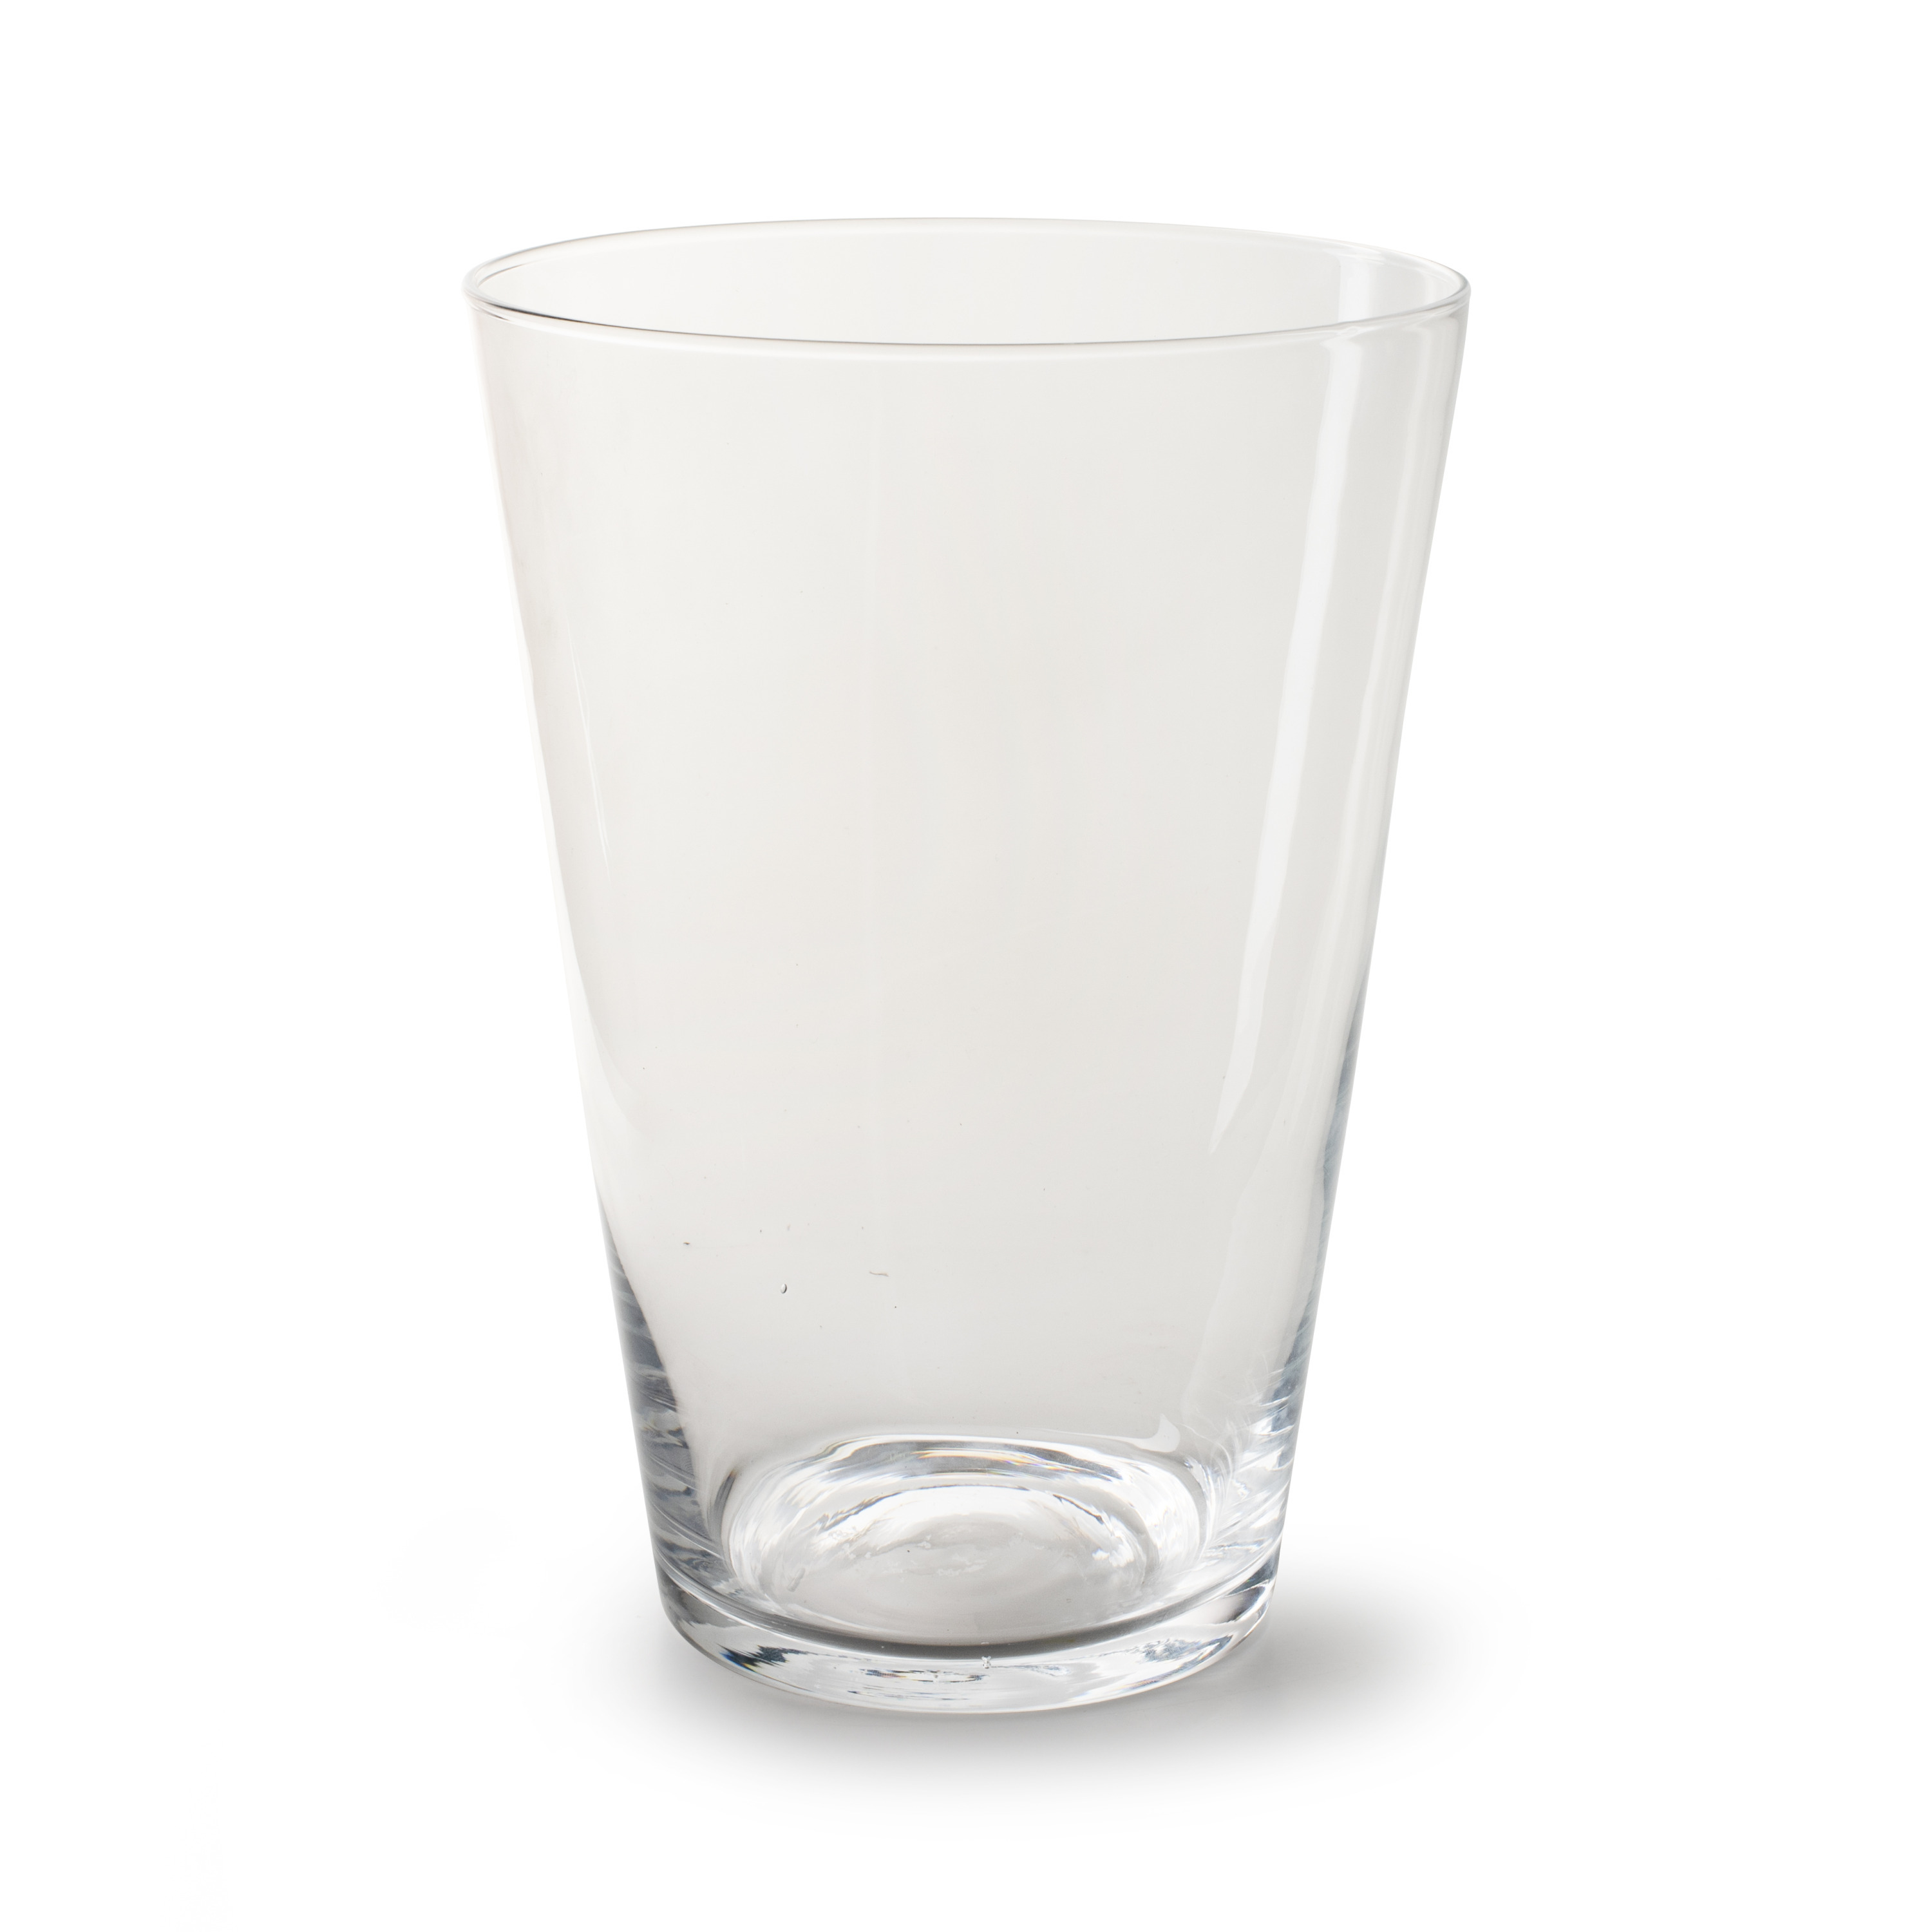 Jodeco Bloemenvaas Nina - helder transparant - glas - D20 x H28 cm - klassieke vorm vaas -